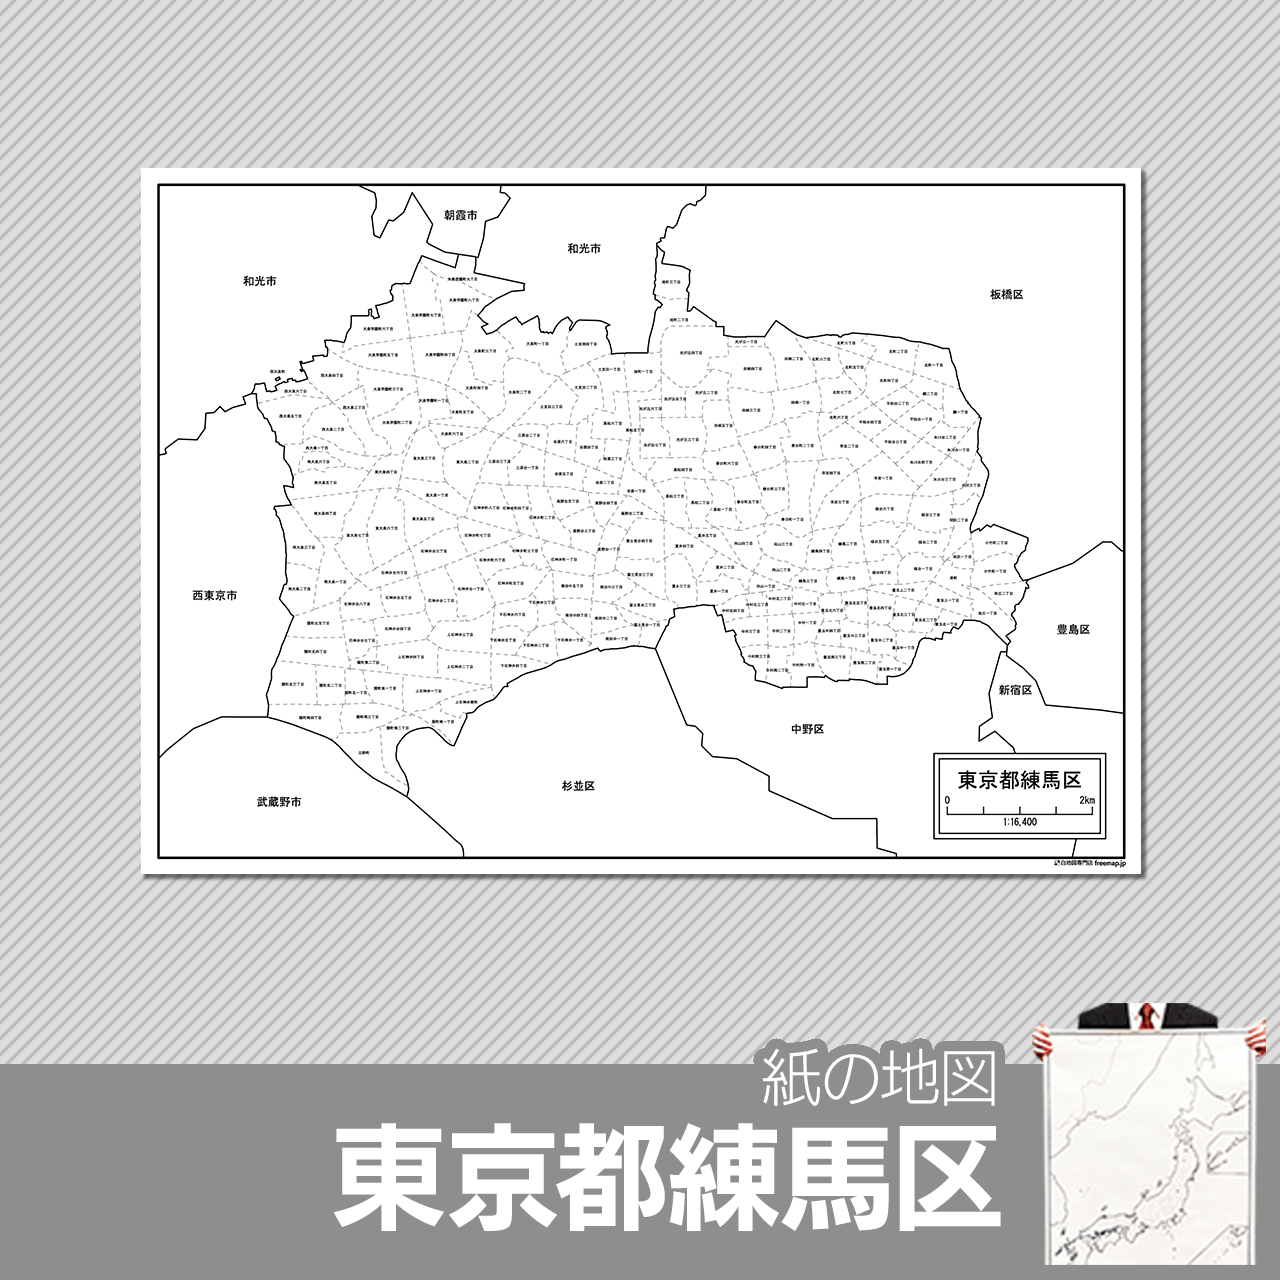 東京都練馬区の紙の白地図のサムネイル